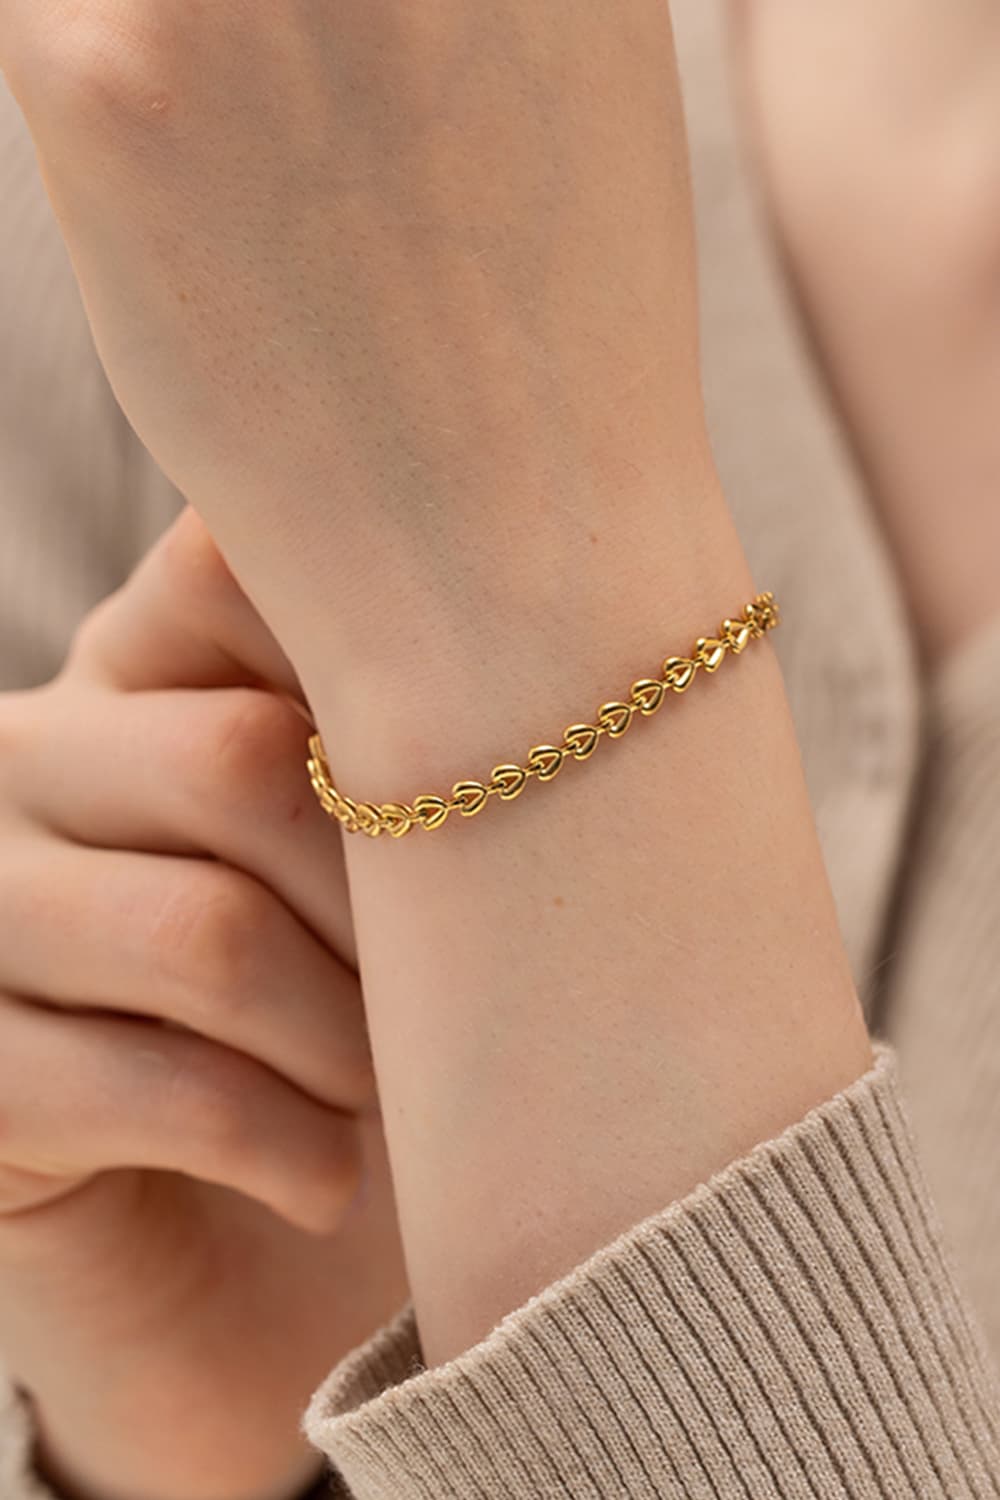 Heart Chain Lobster Clasp Bracelet - Gold / One Size - Women’s Jewelry - Bracelets - 2 - 2024